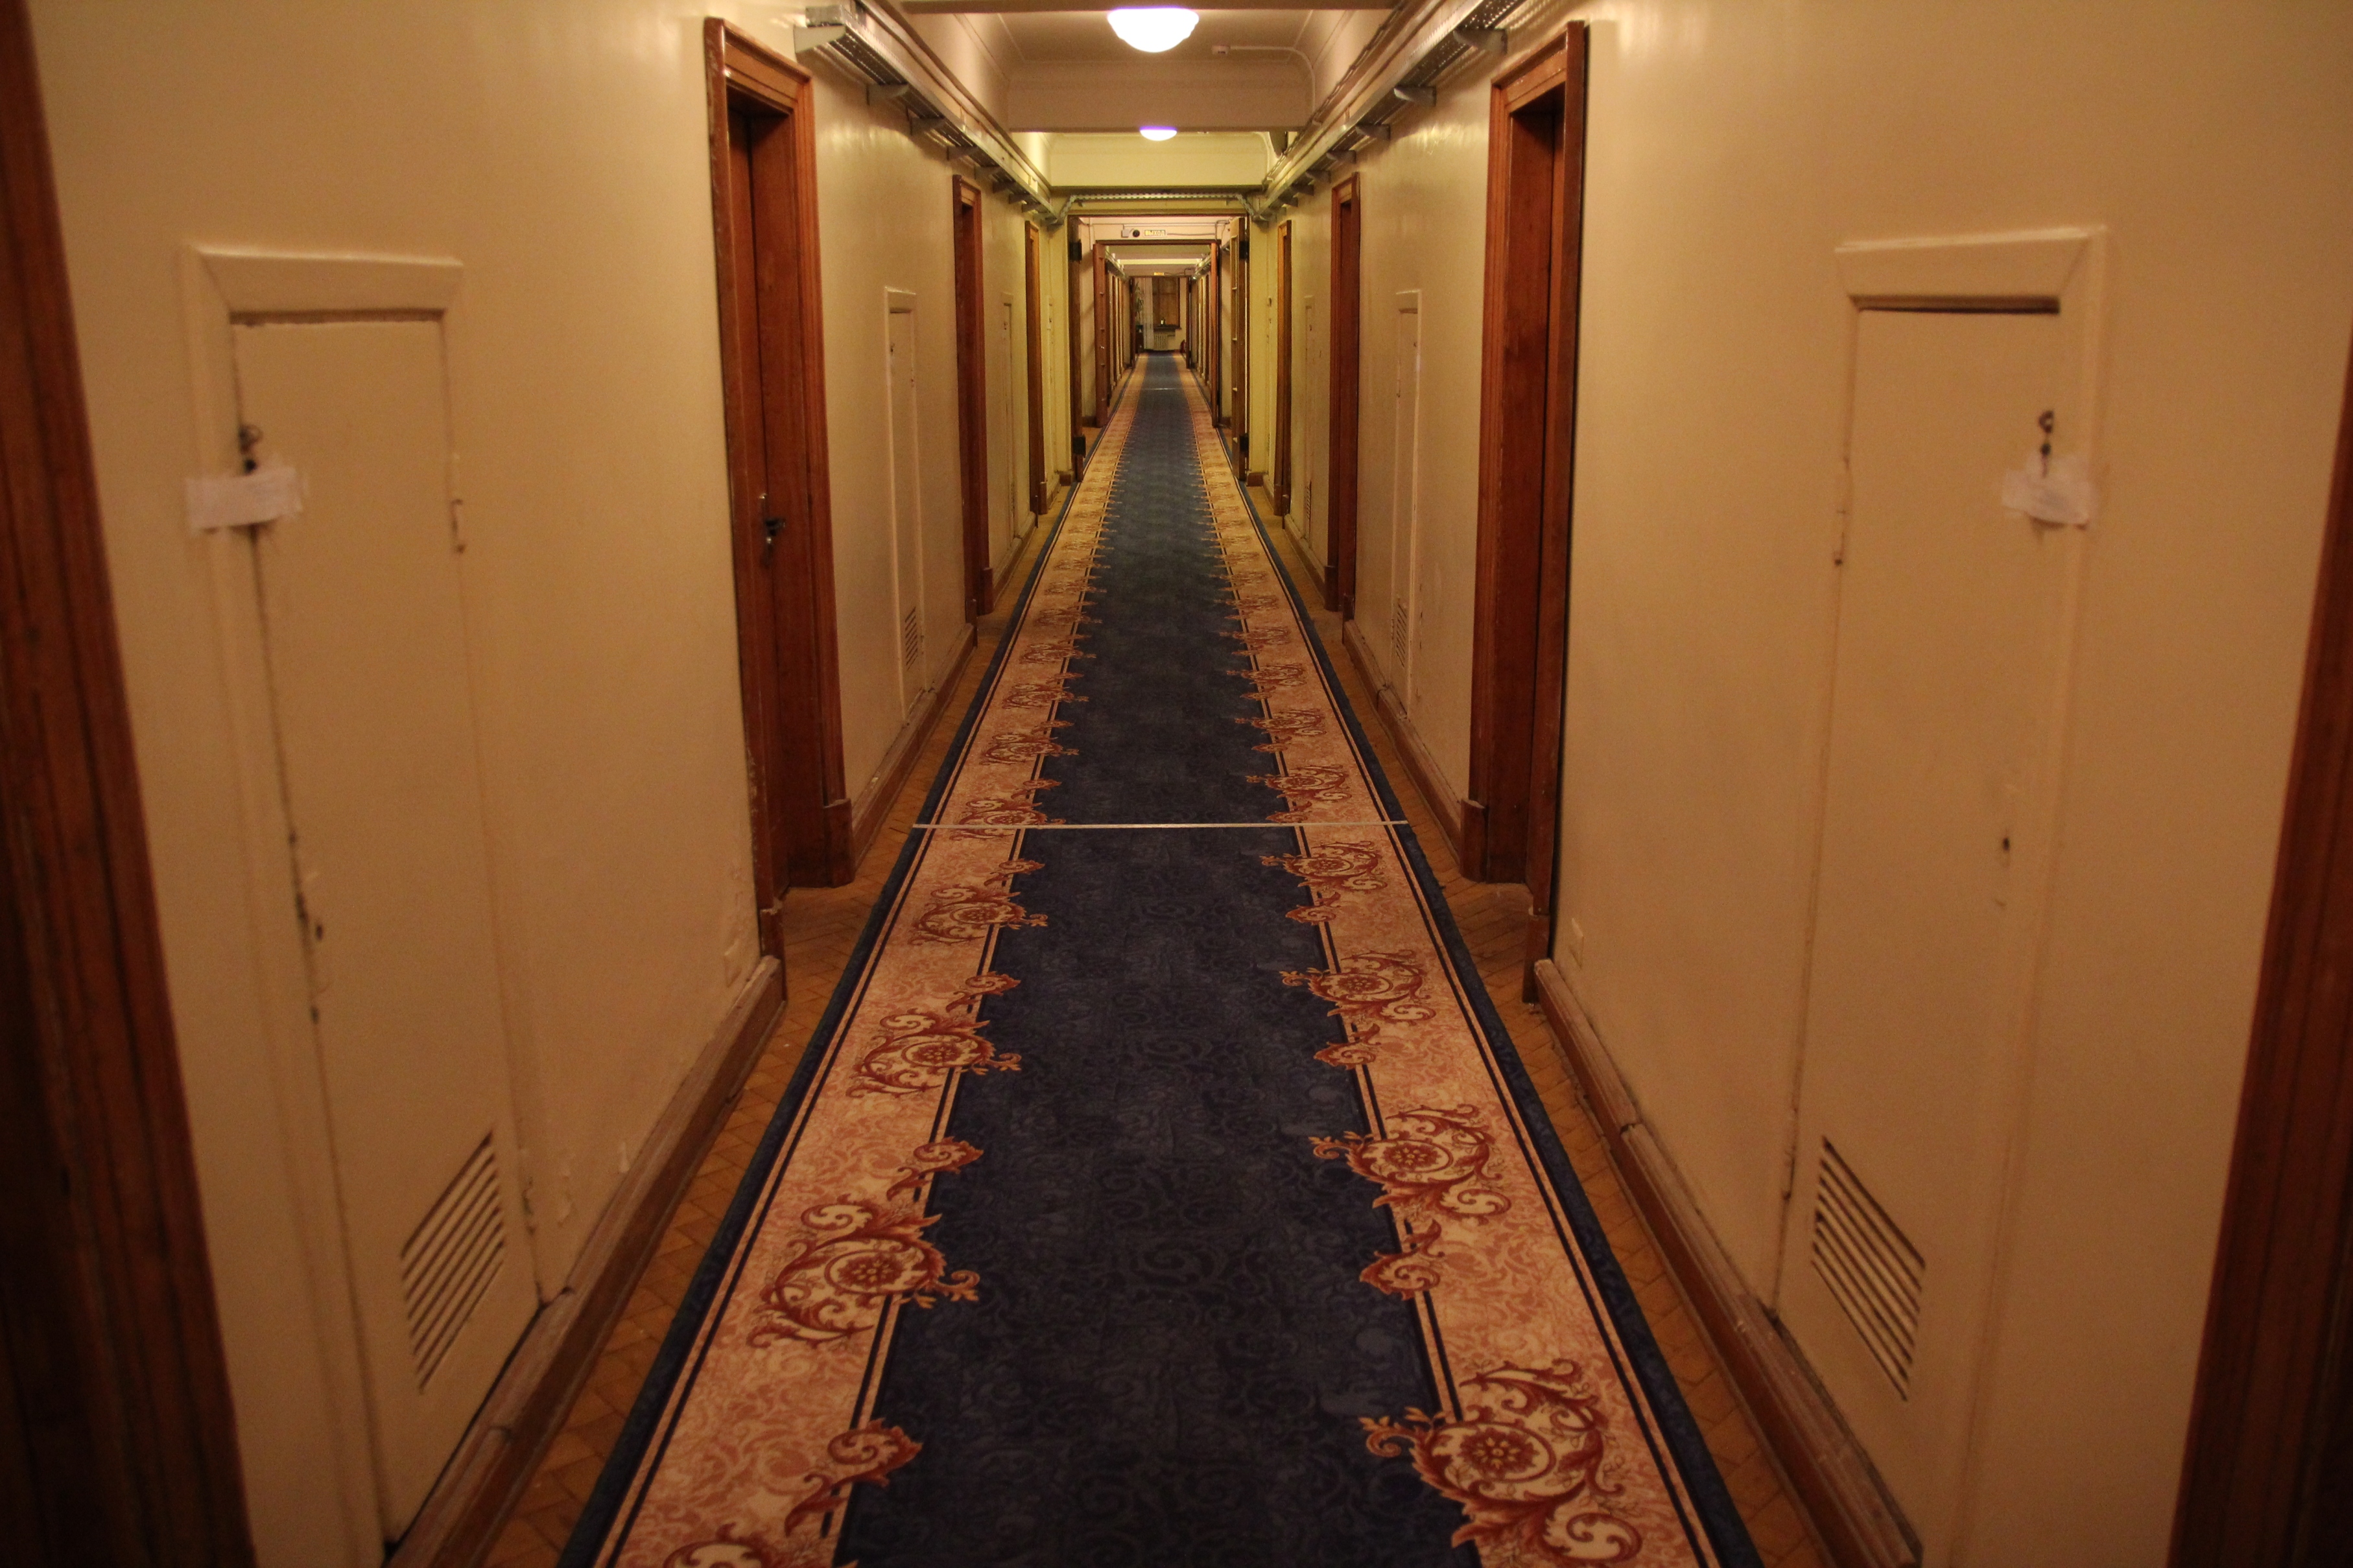 A folyosónkon kiválóan lehet Benny Hill/ Scooby Doo/ Ragyogás jeleneteket forgatni. Figyeljük csak a plombákat az ajtókon!